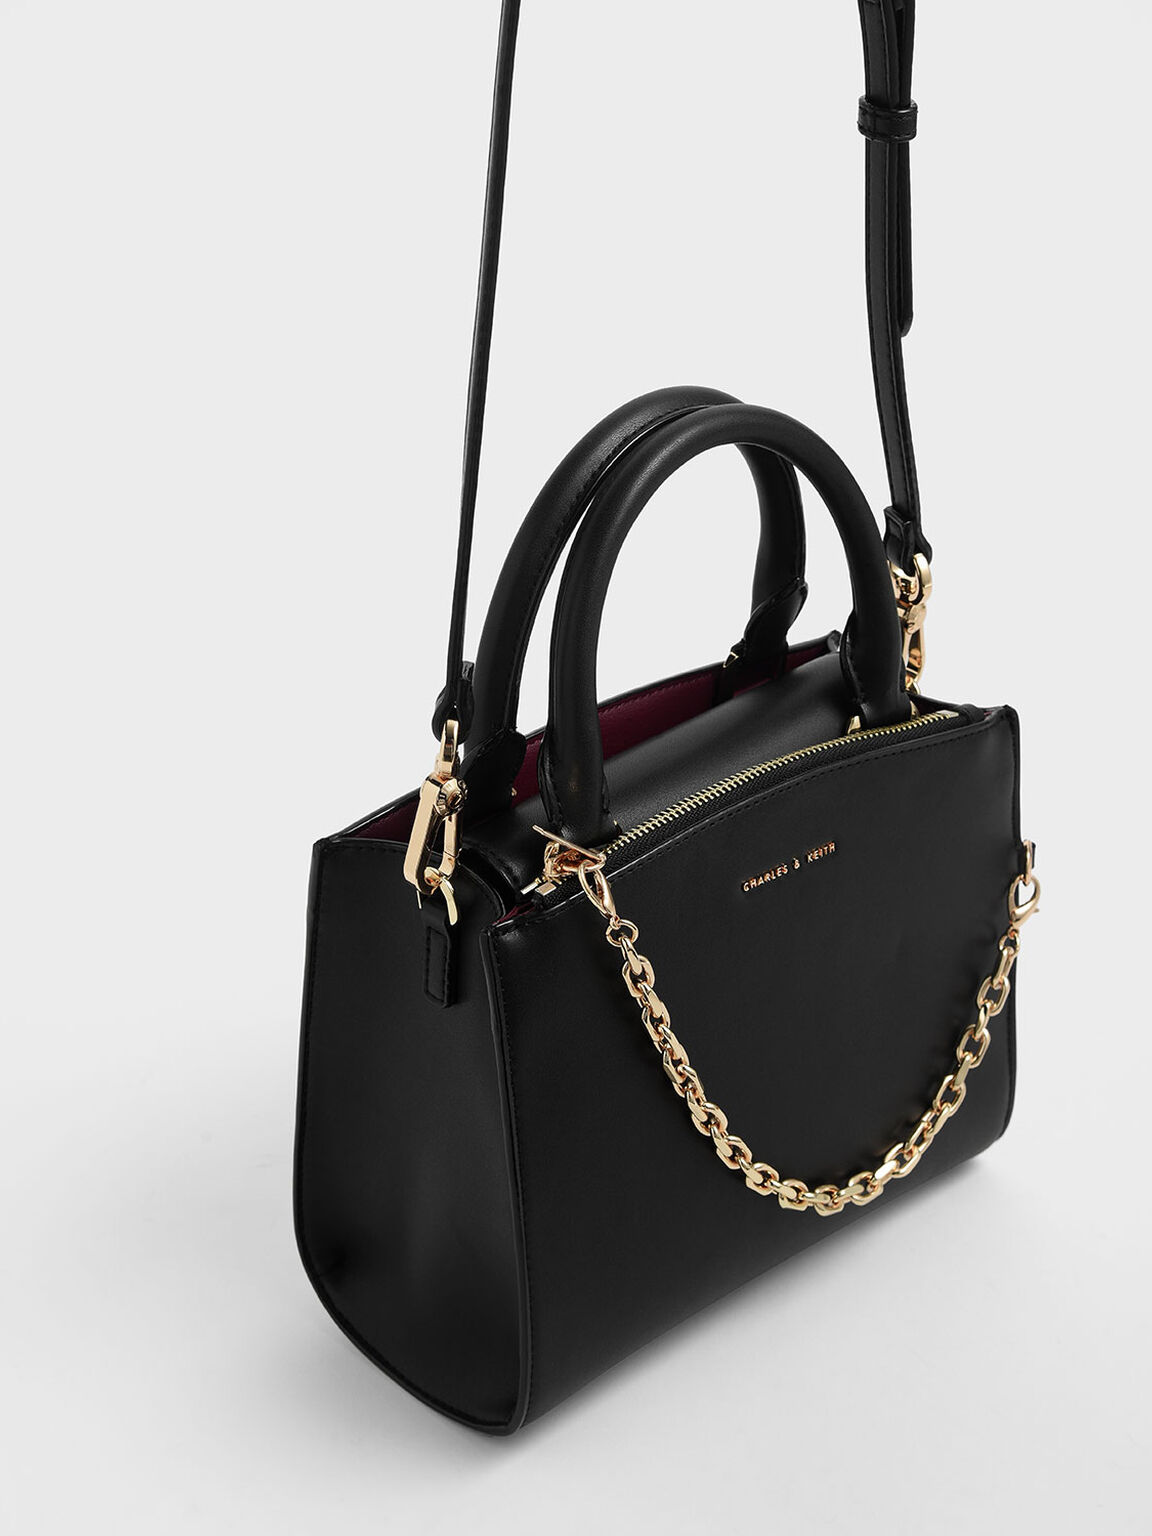 Chain Link Classic Handbag, Black, hi-res